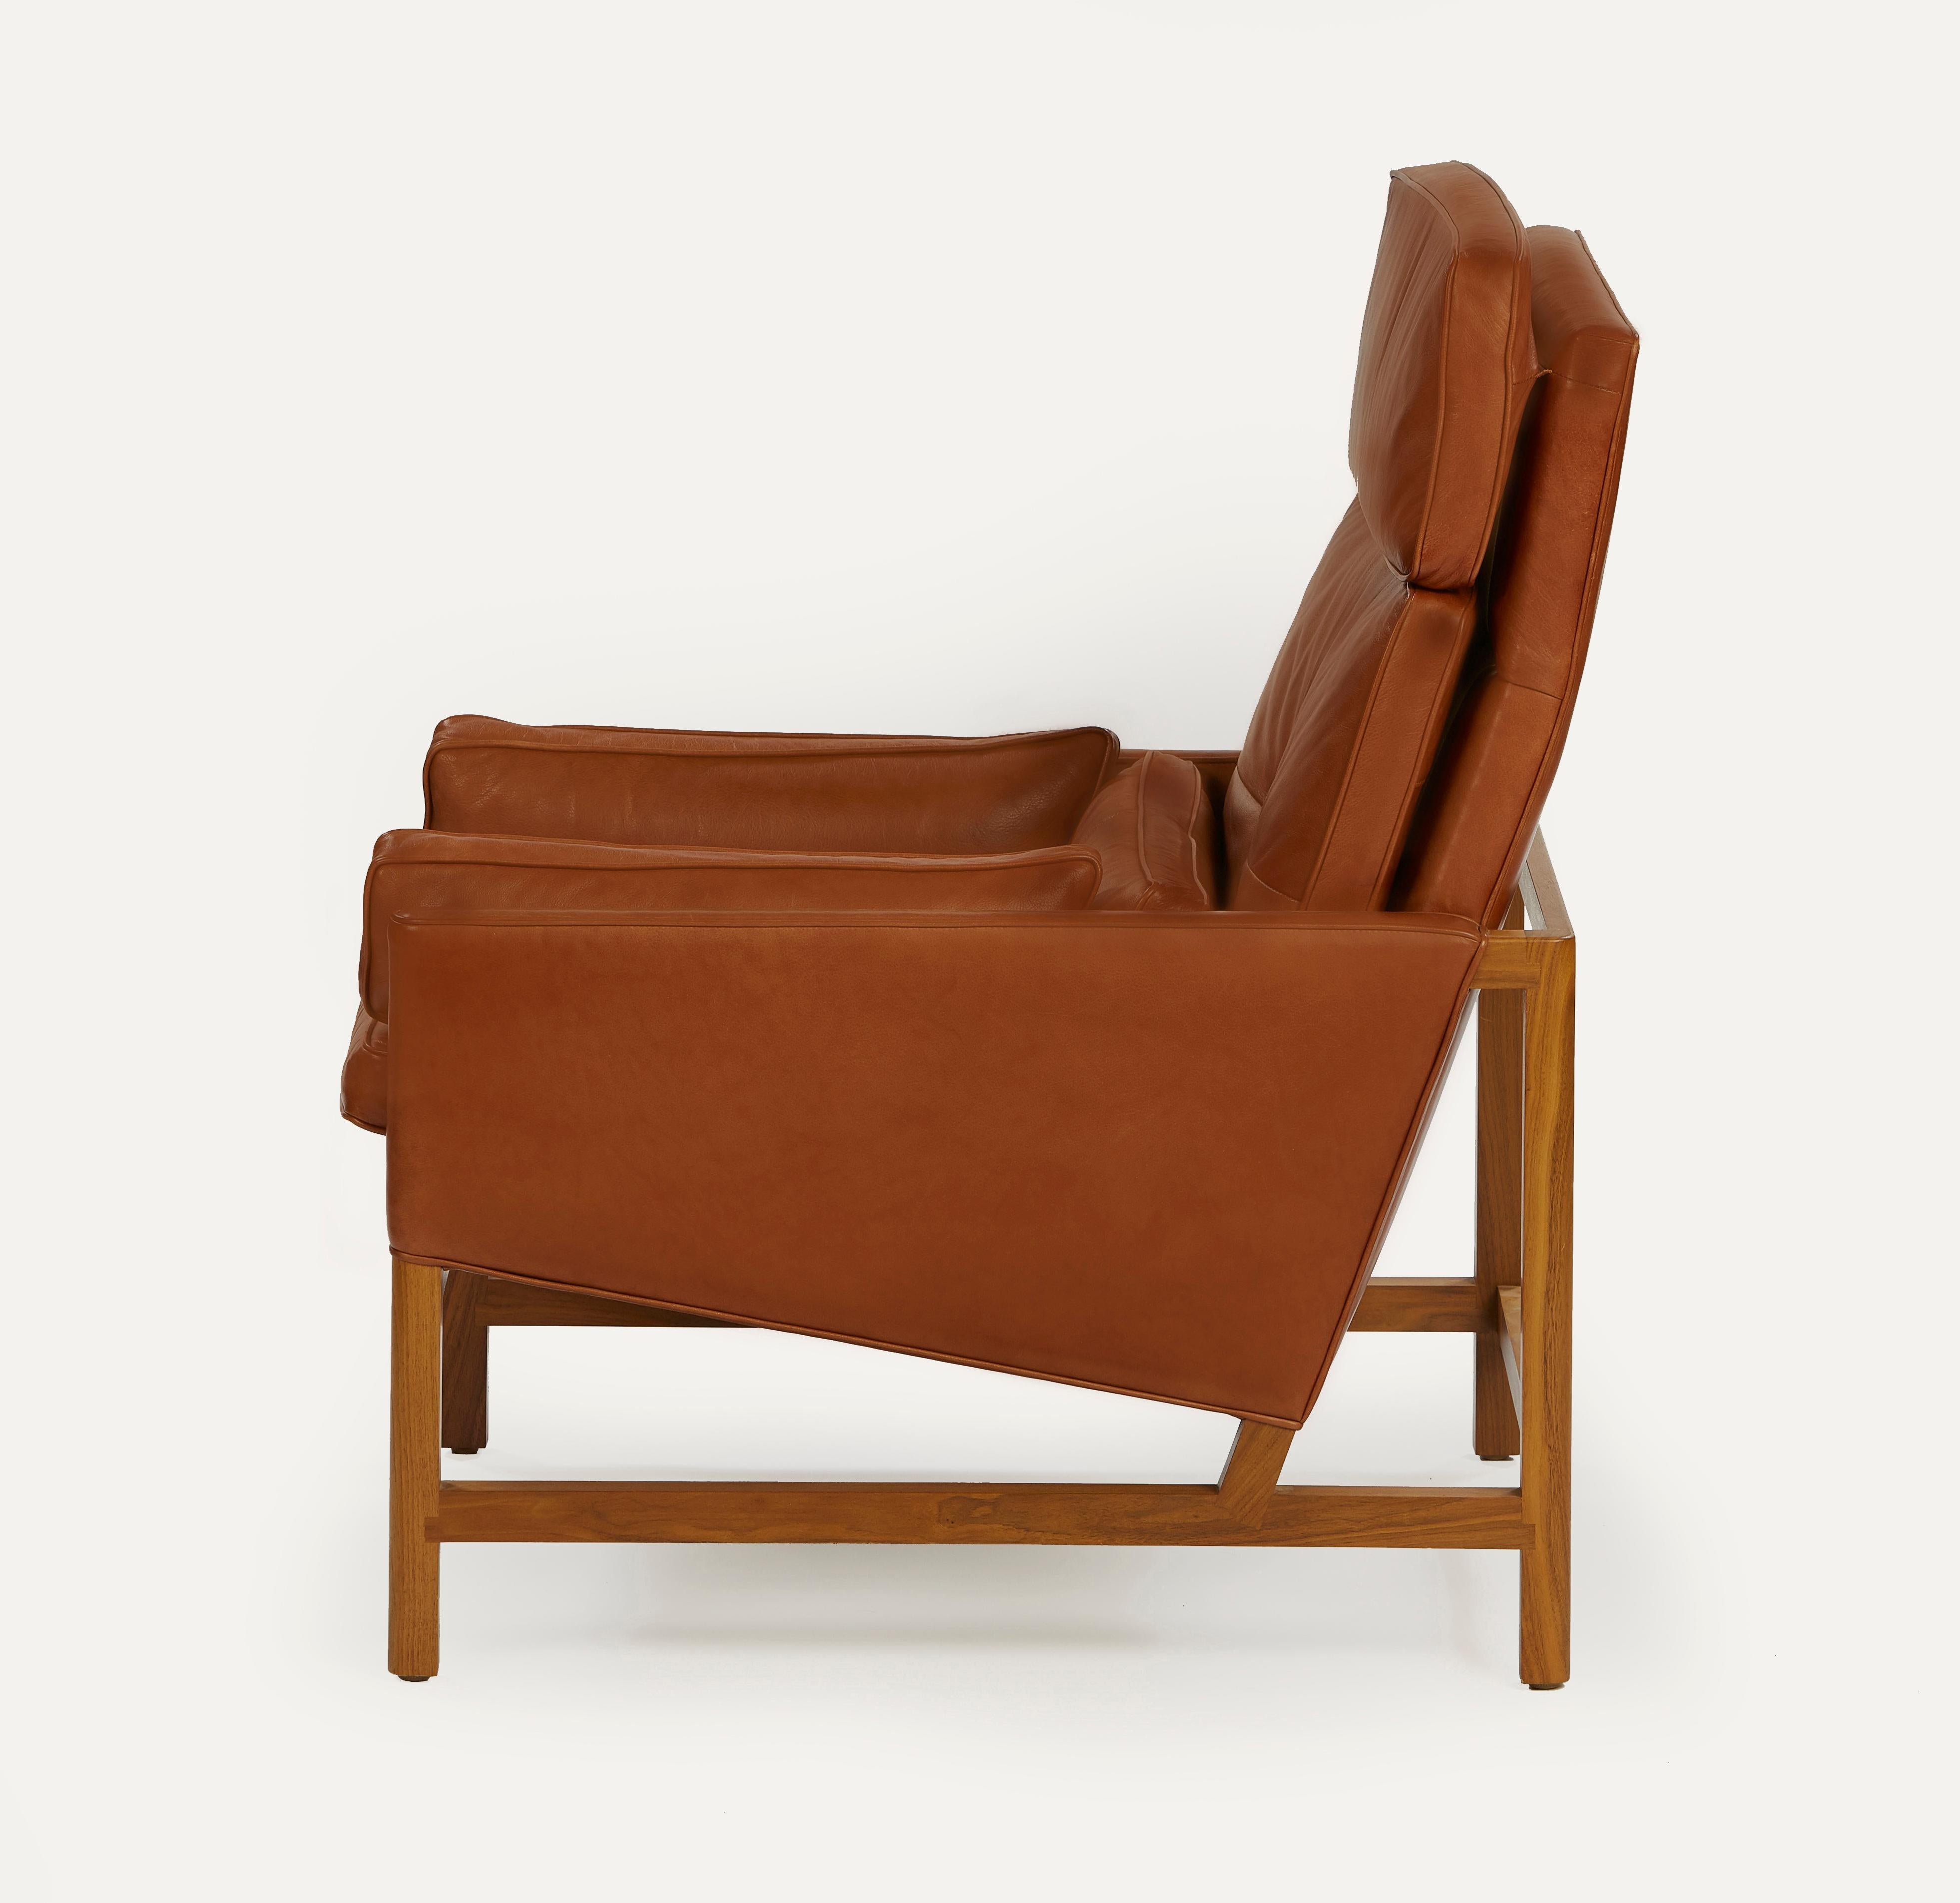 Im Angebot: Loungesessel mit Holzrahmen und hoher Rückenlehne aus Nussbaumholz und Leder, entworfen von Craig Bassam, Brown (Elegant 93718 Dark Cognac)